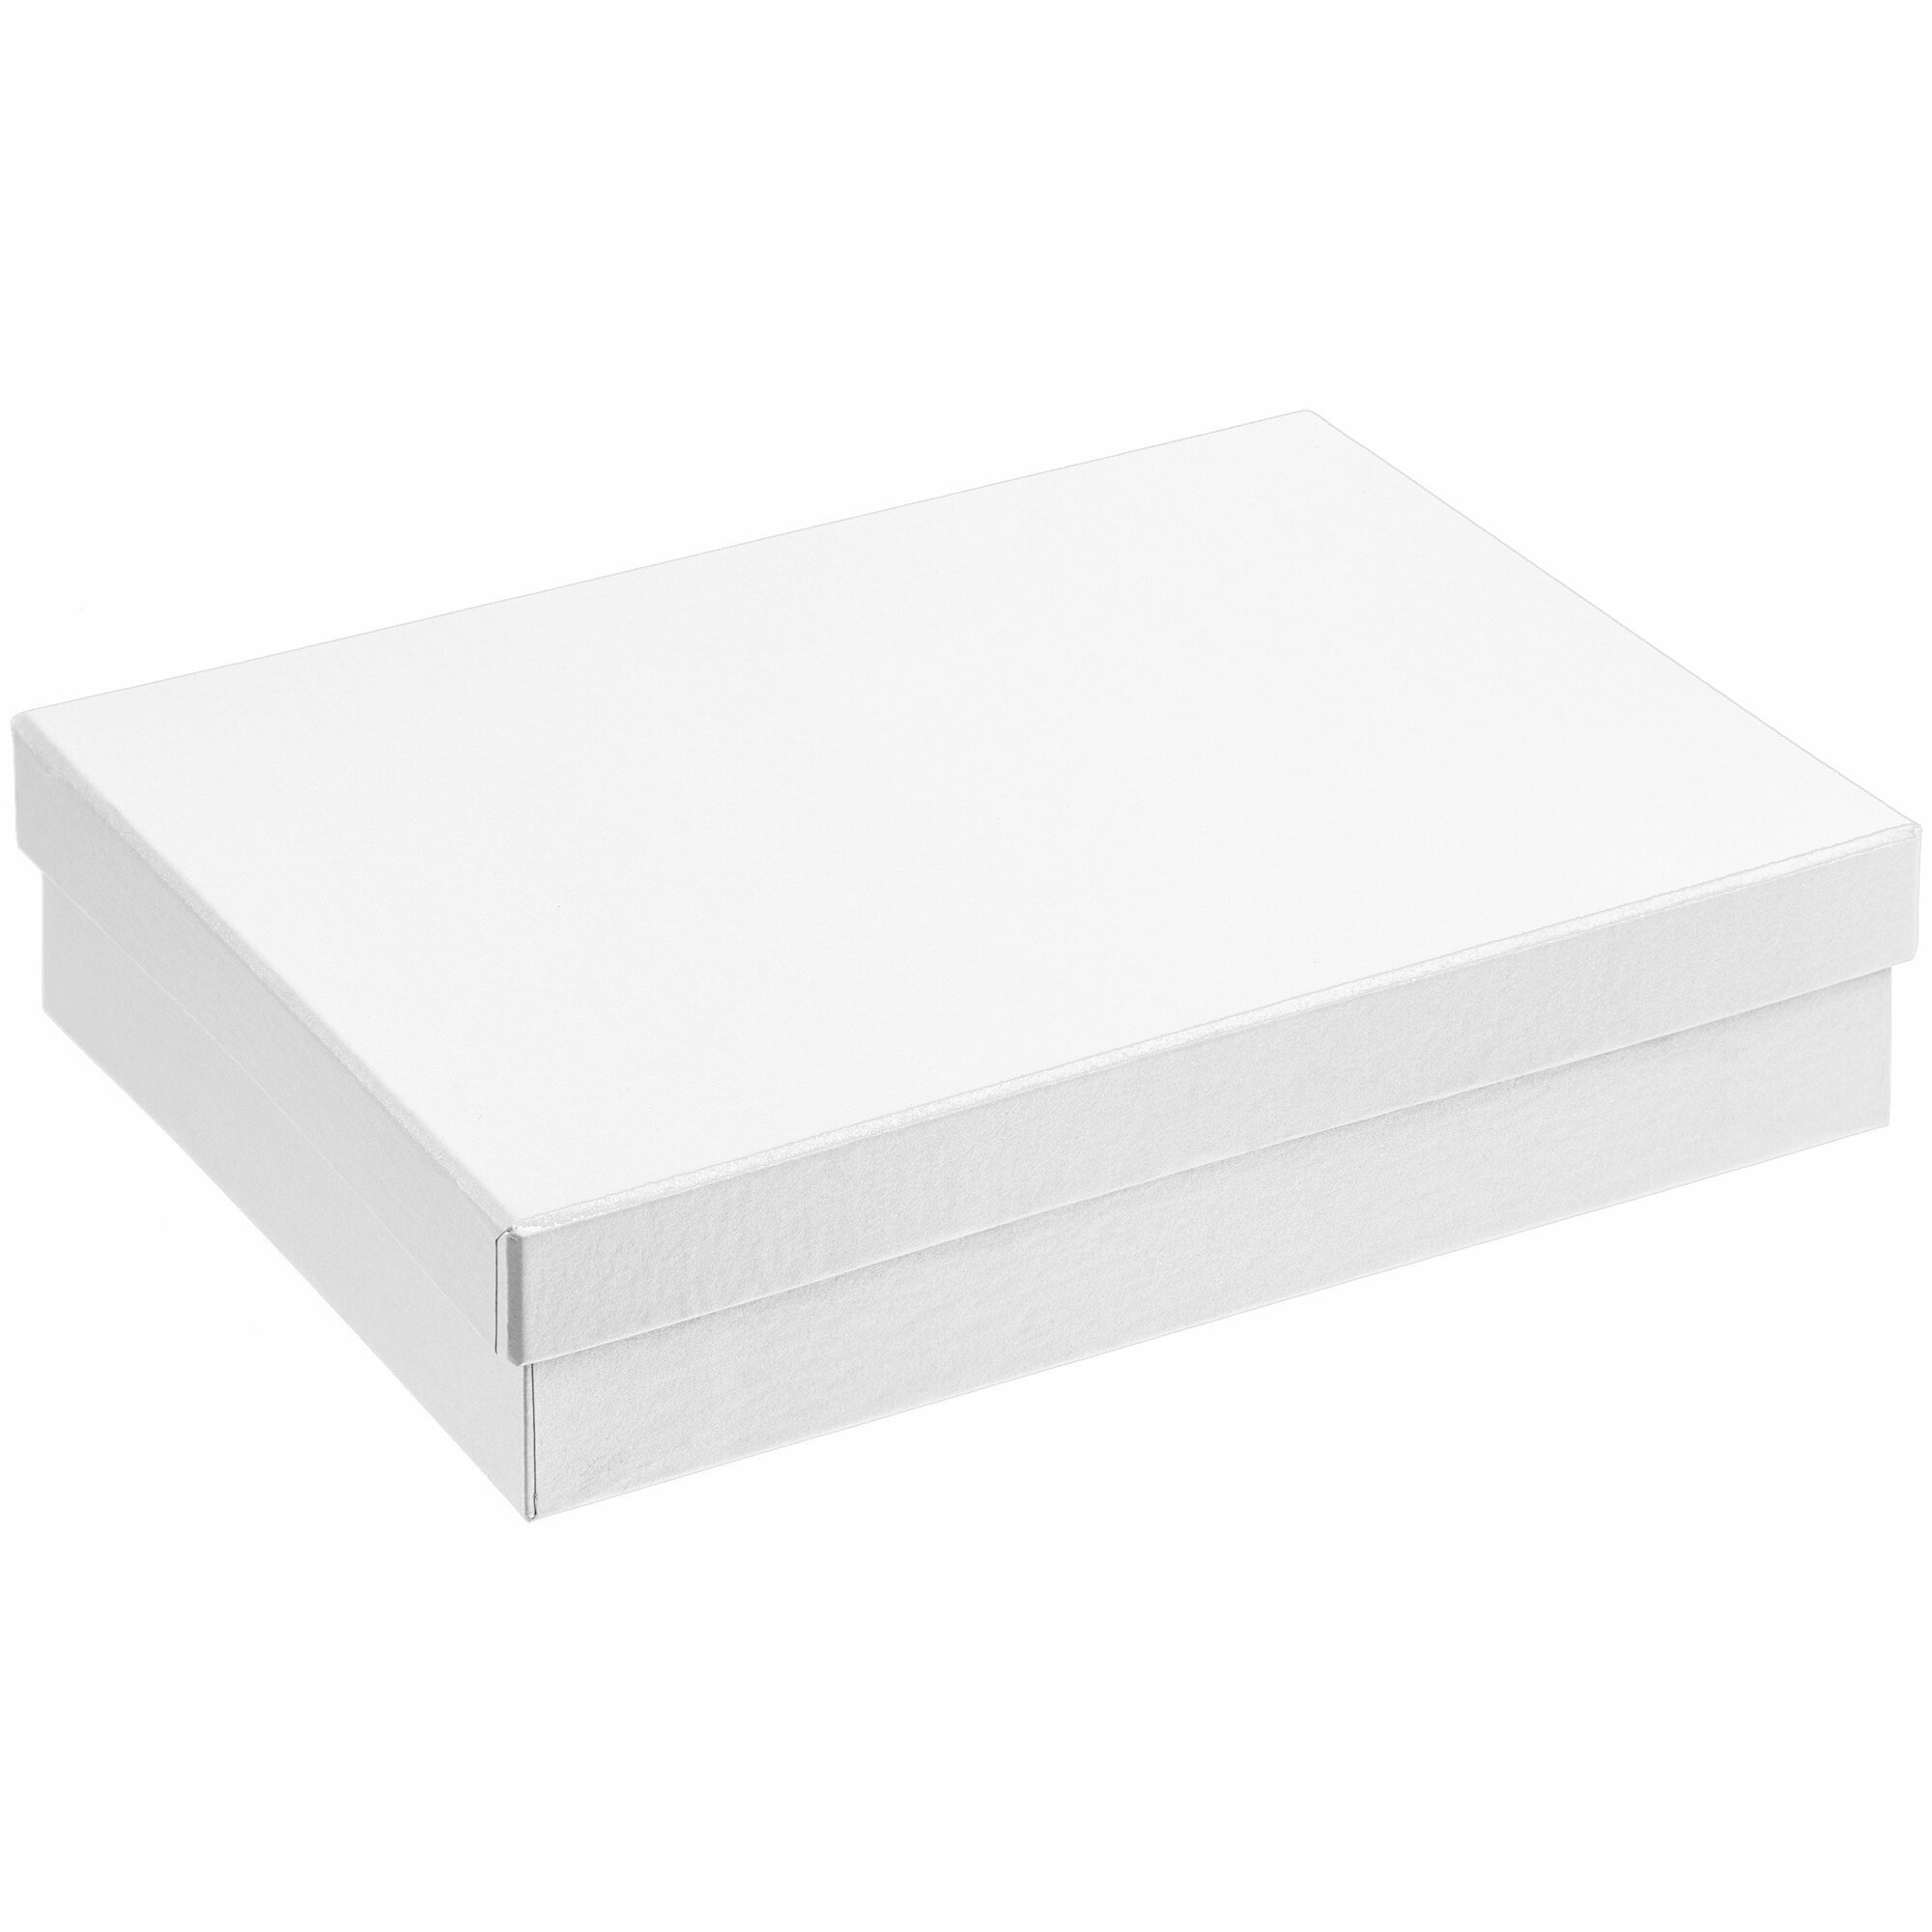 Белая подарочная коробка для упаковки 22х15х5 см, набор для праздника